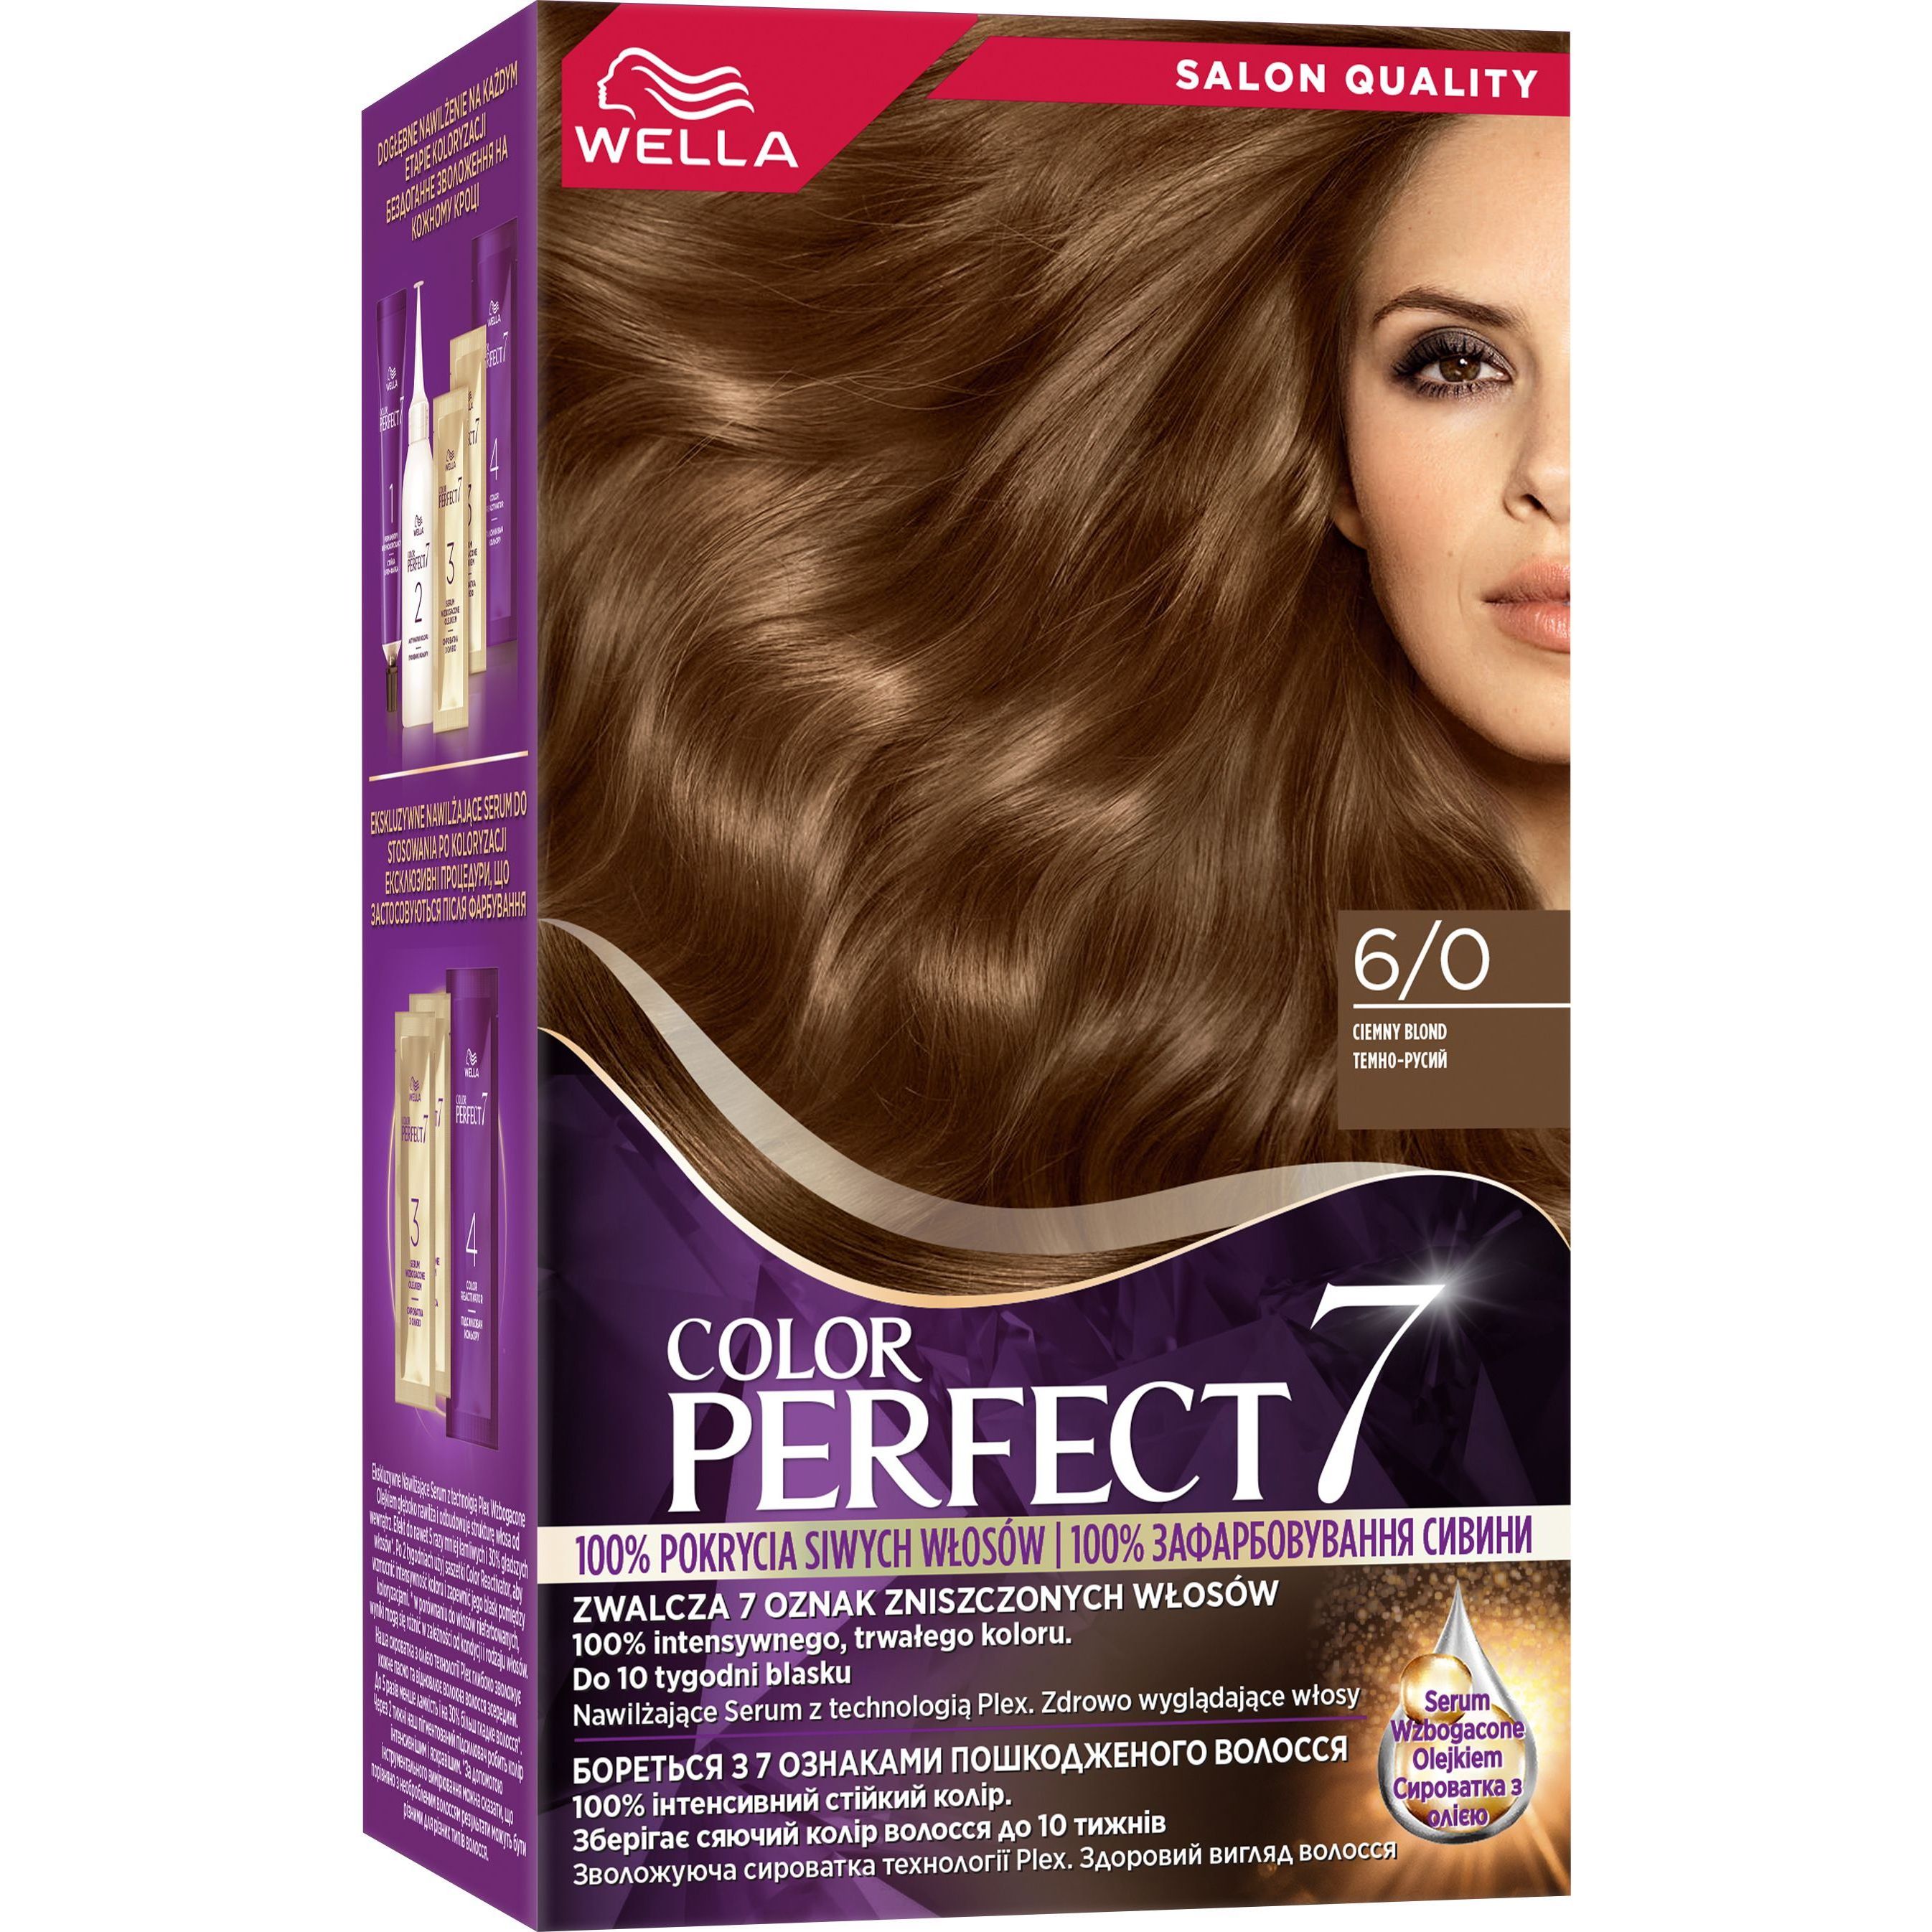 Стійка крем-фарба для волосся Wella Color Perfect 6/0 Темно-русий (4064666598321) - фото 1